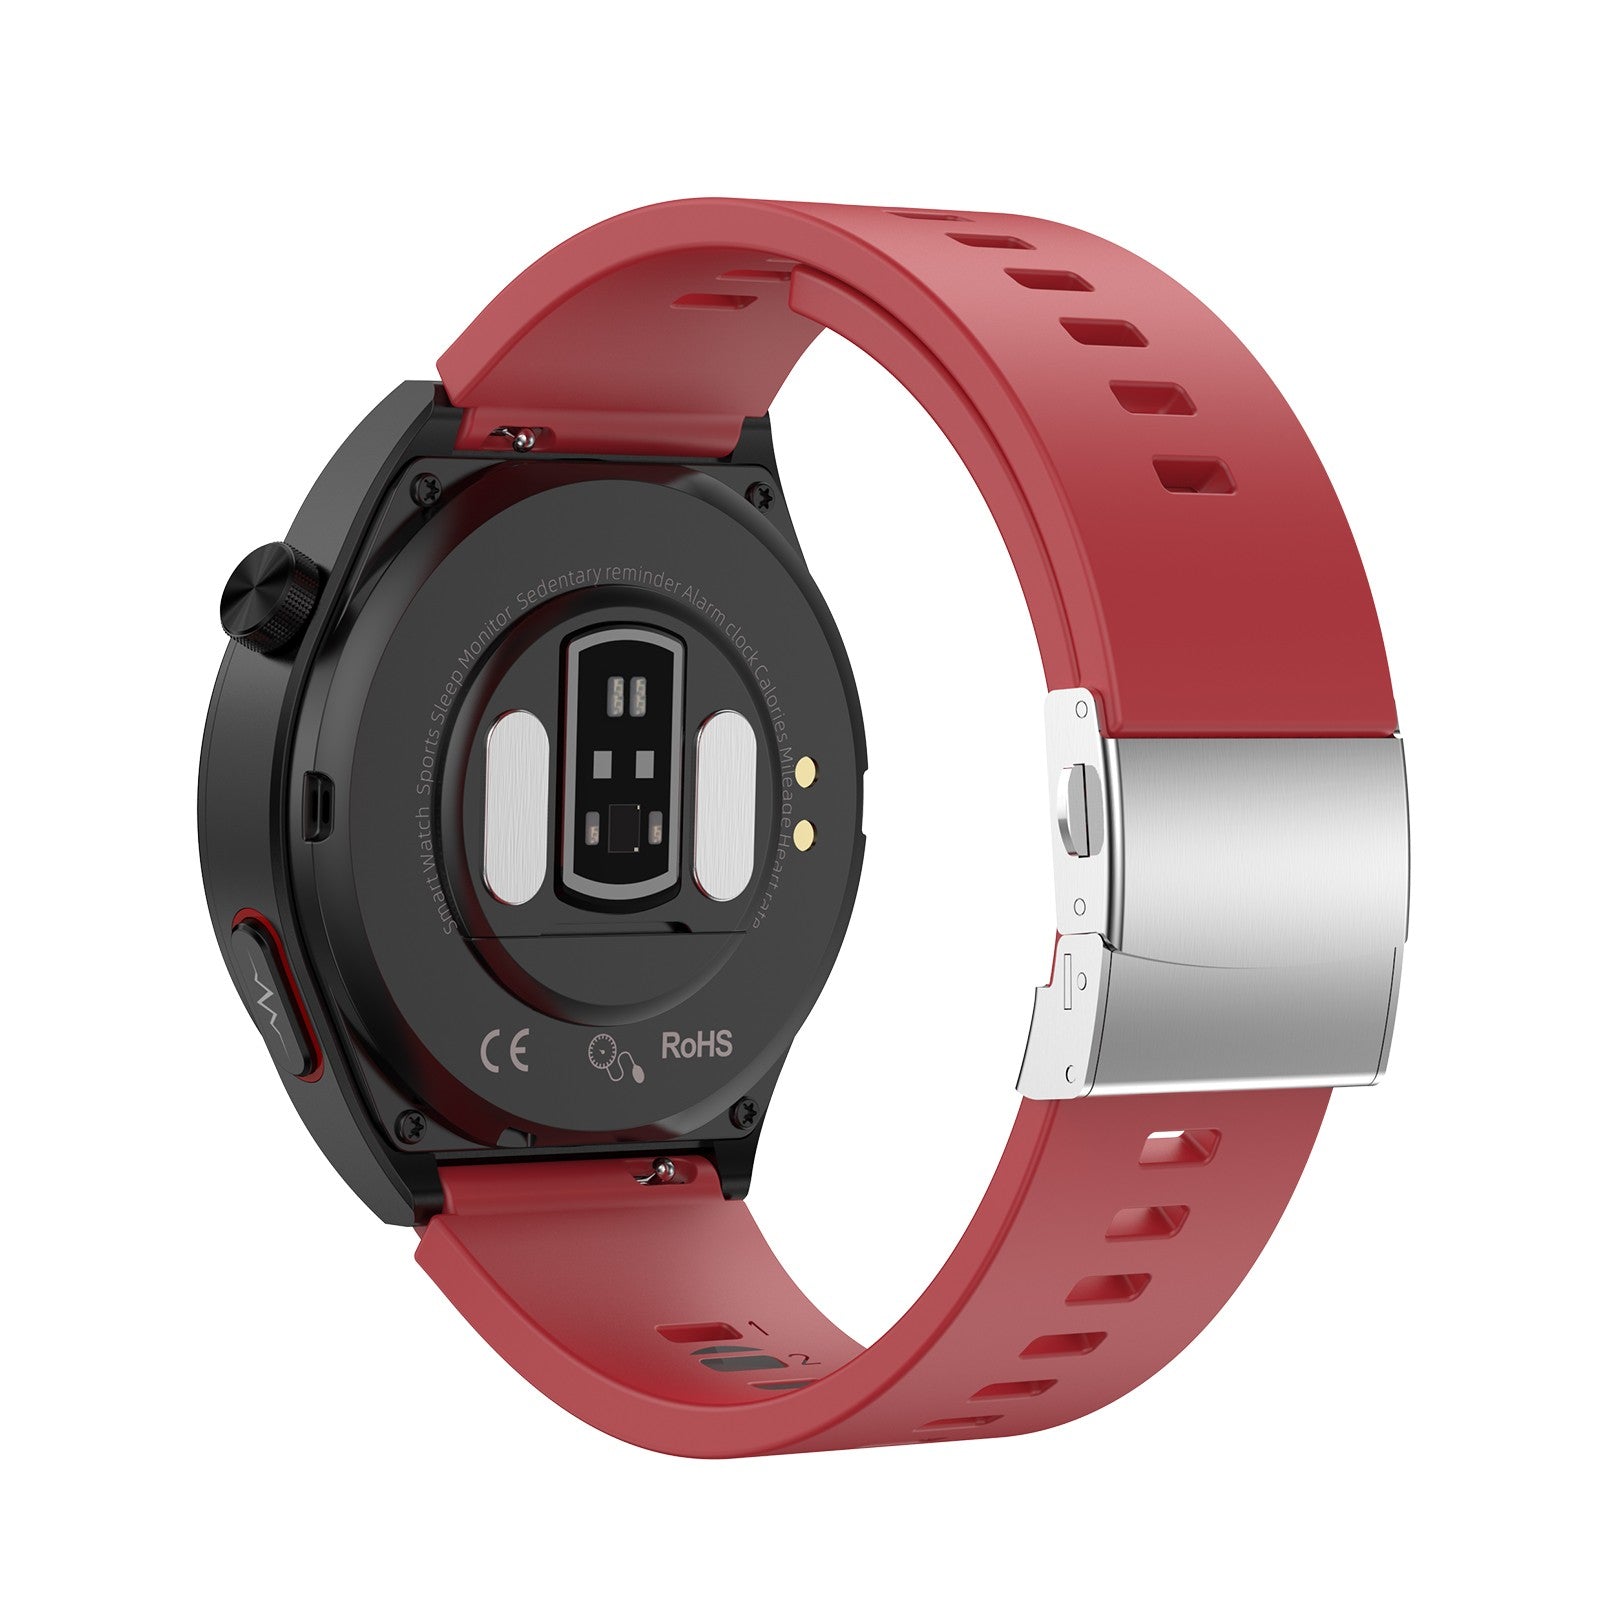 BP Doctor Pro 15B Tragbare, präzise Blutdruck-Smartwatch